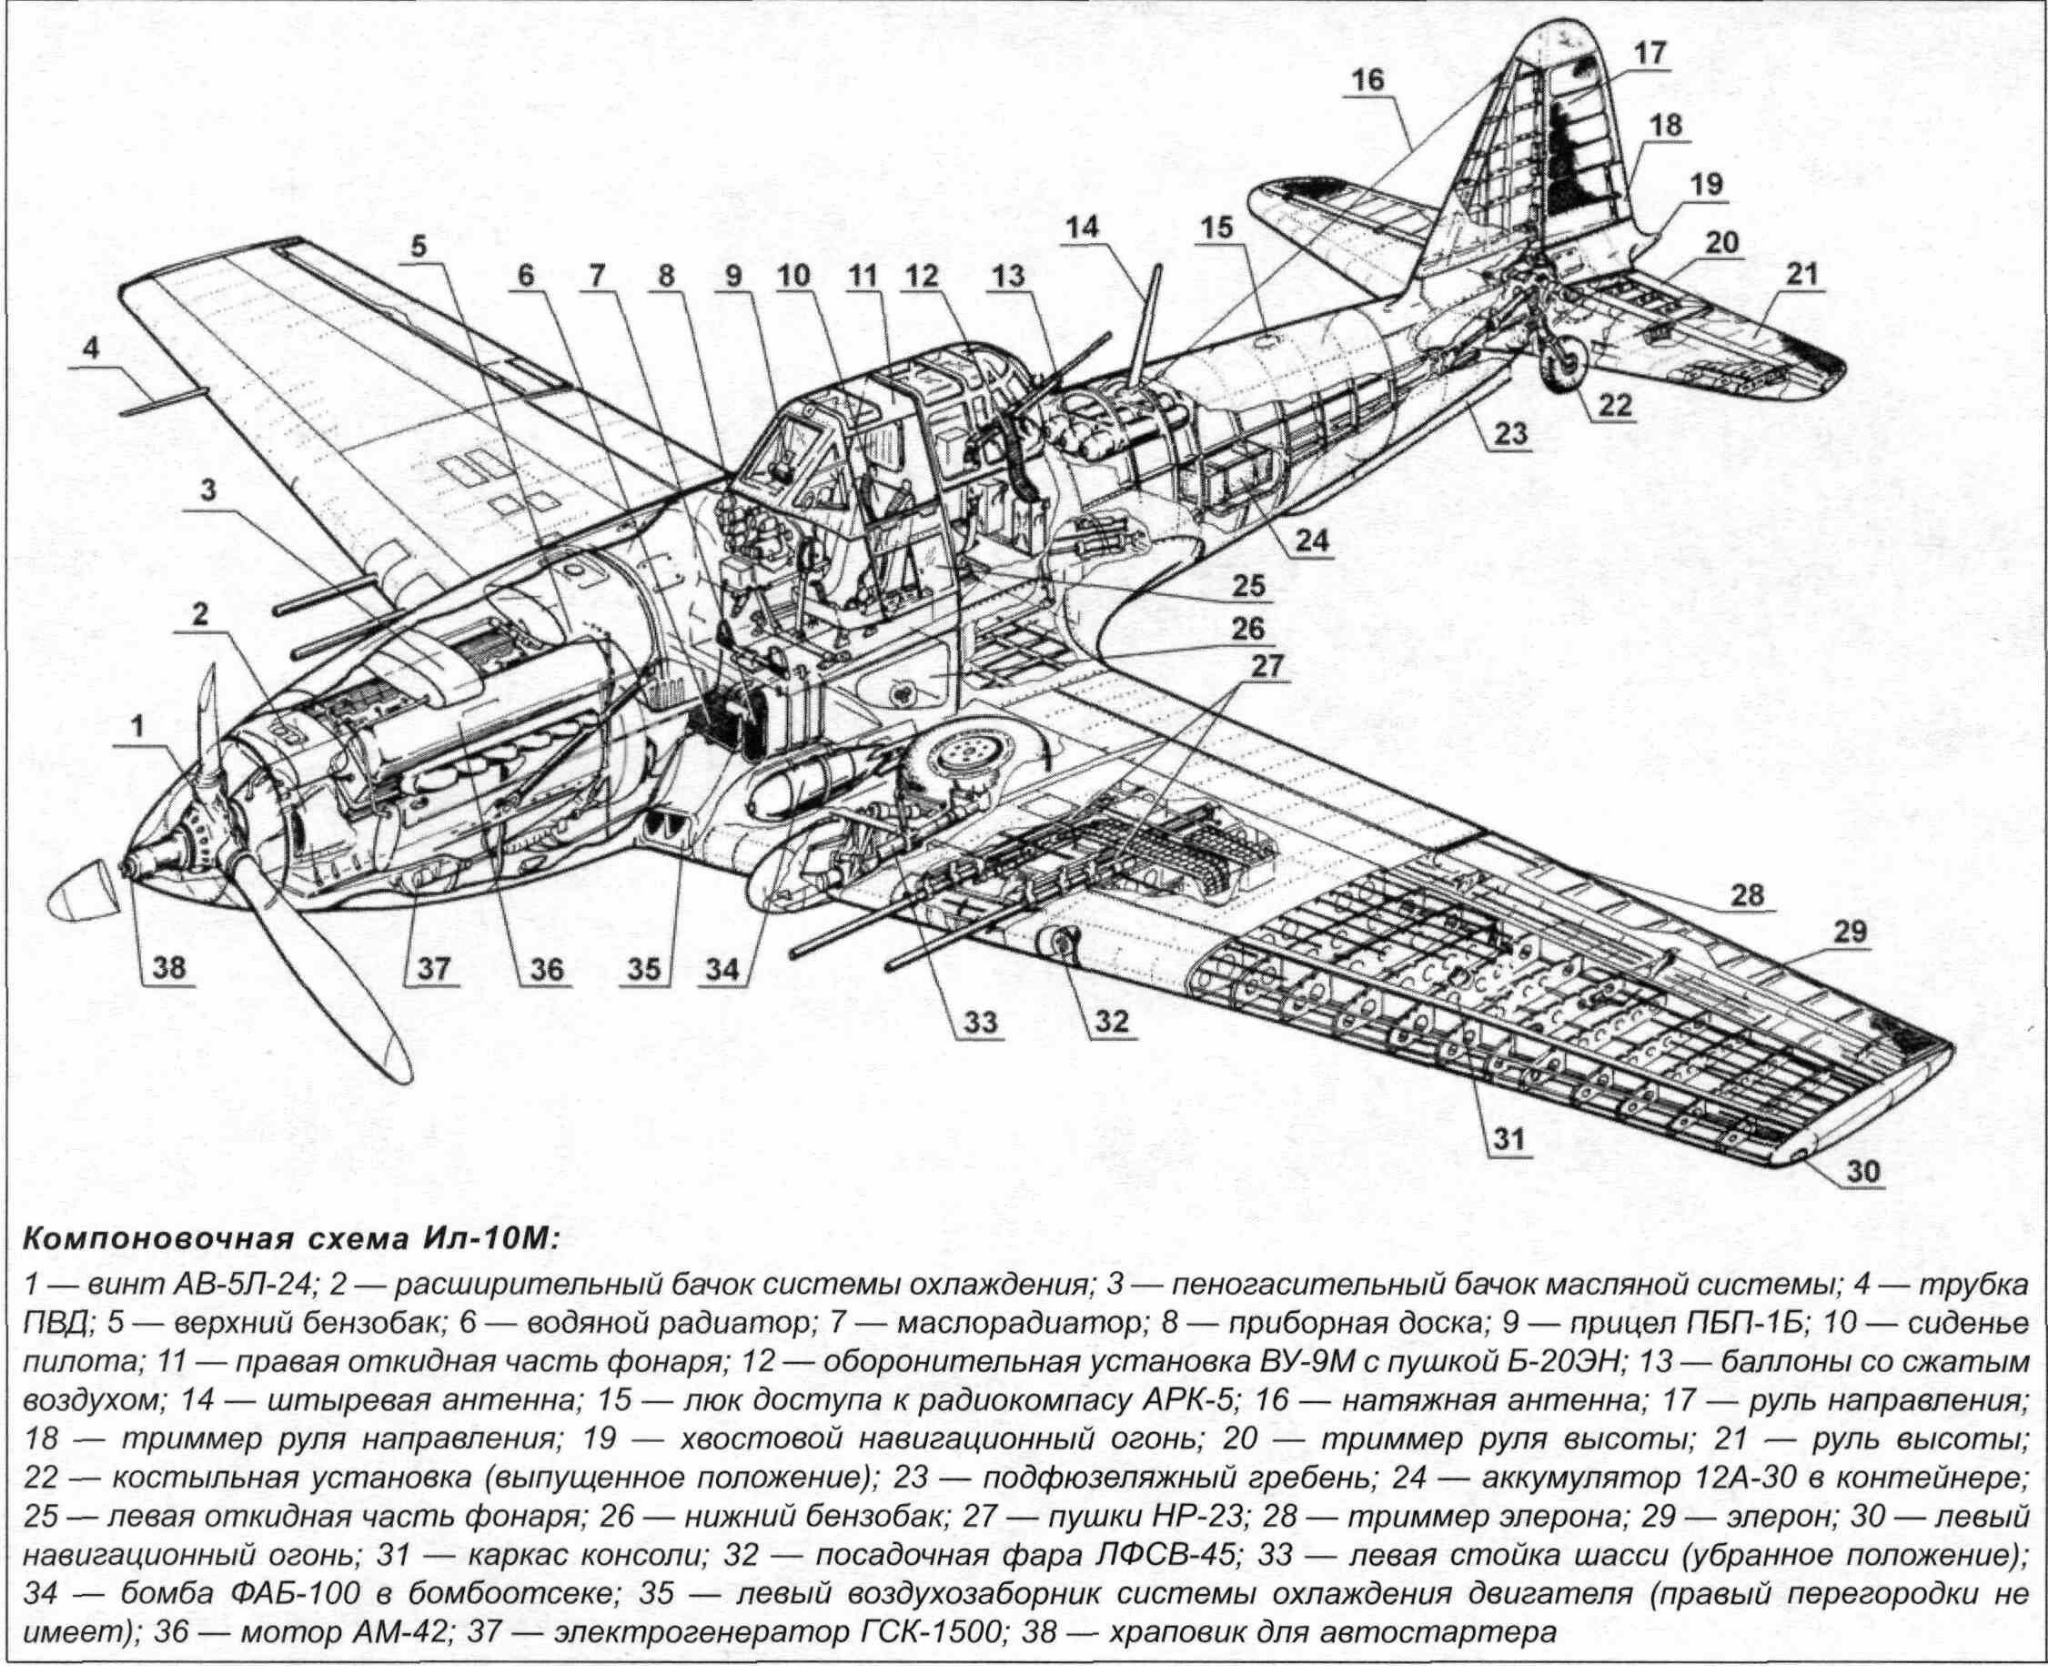 二战时苏联有哪些可以与喷火式和bf109平起平坐的战斗机? 